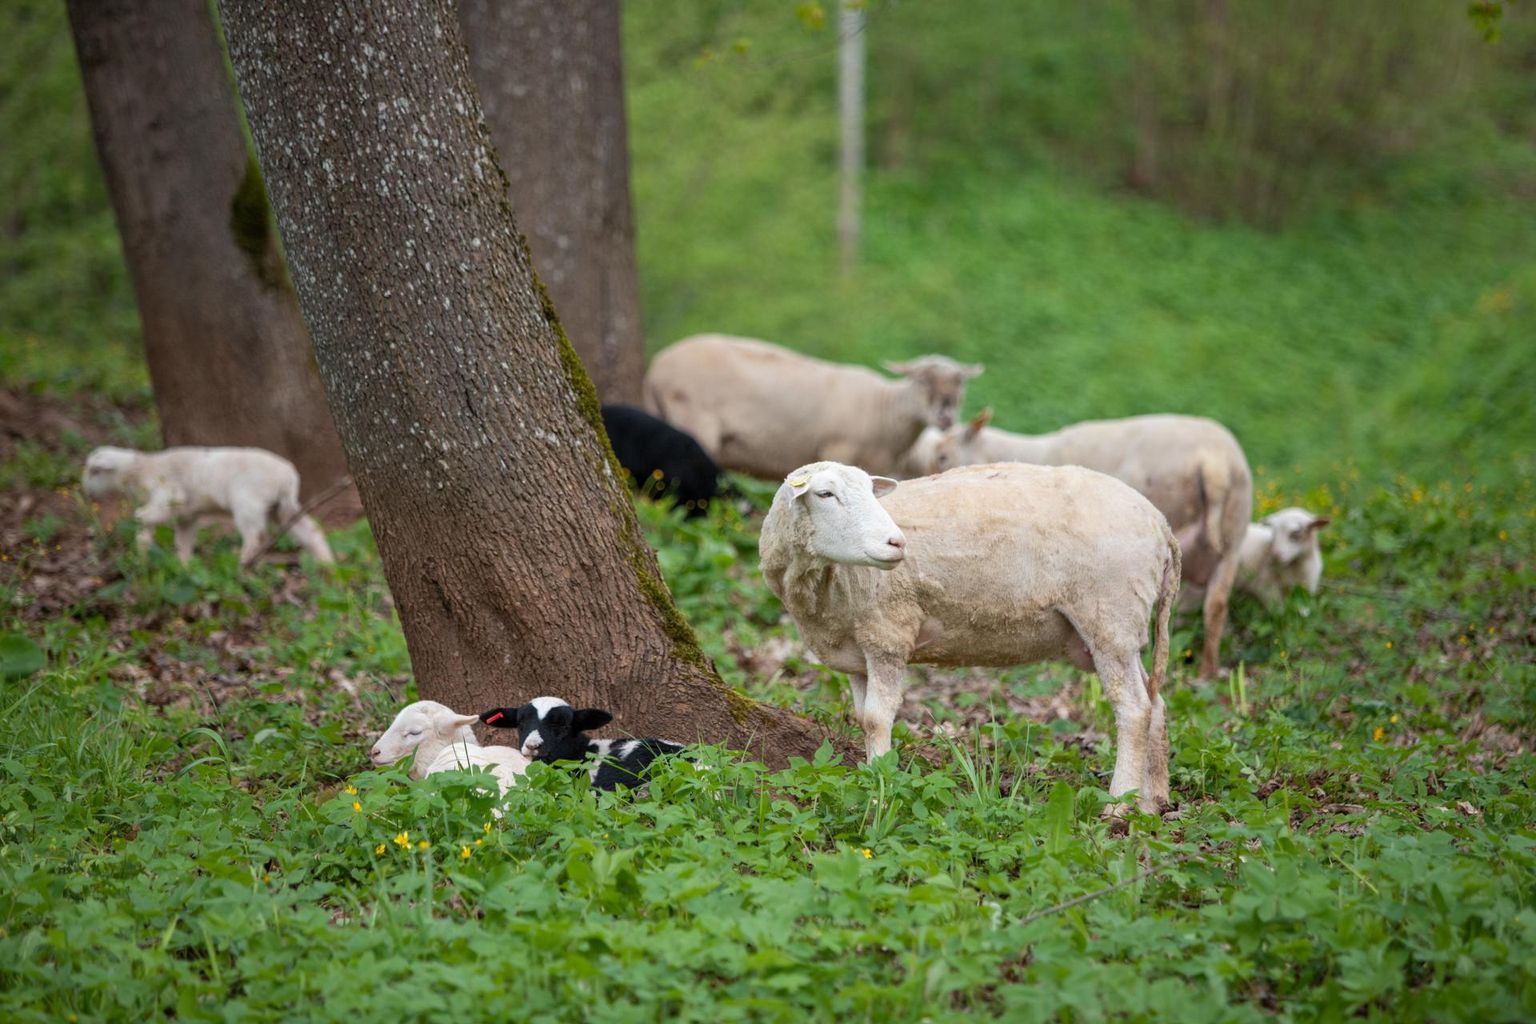 Esmaspäeval toodi Viljandi lossimägede nõlvadele lambad, kellel tuleb maad jagada ühe kärnas rebasega. Olgugi et kärntõbi lammastele ei nakka, võib reinuvader olla ohtlik pisikestele talledele.